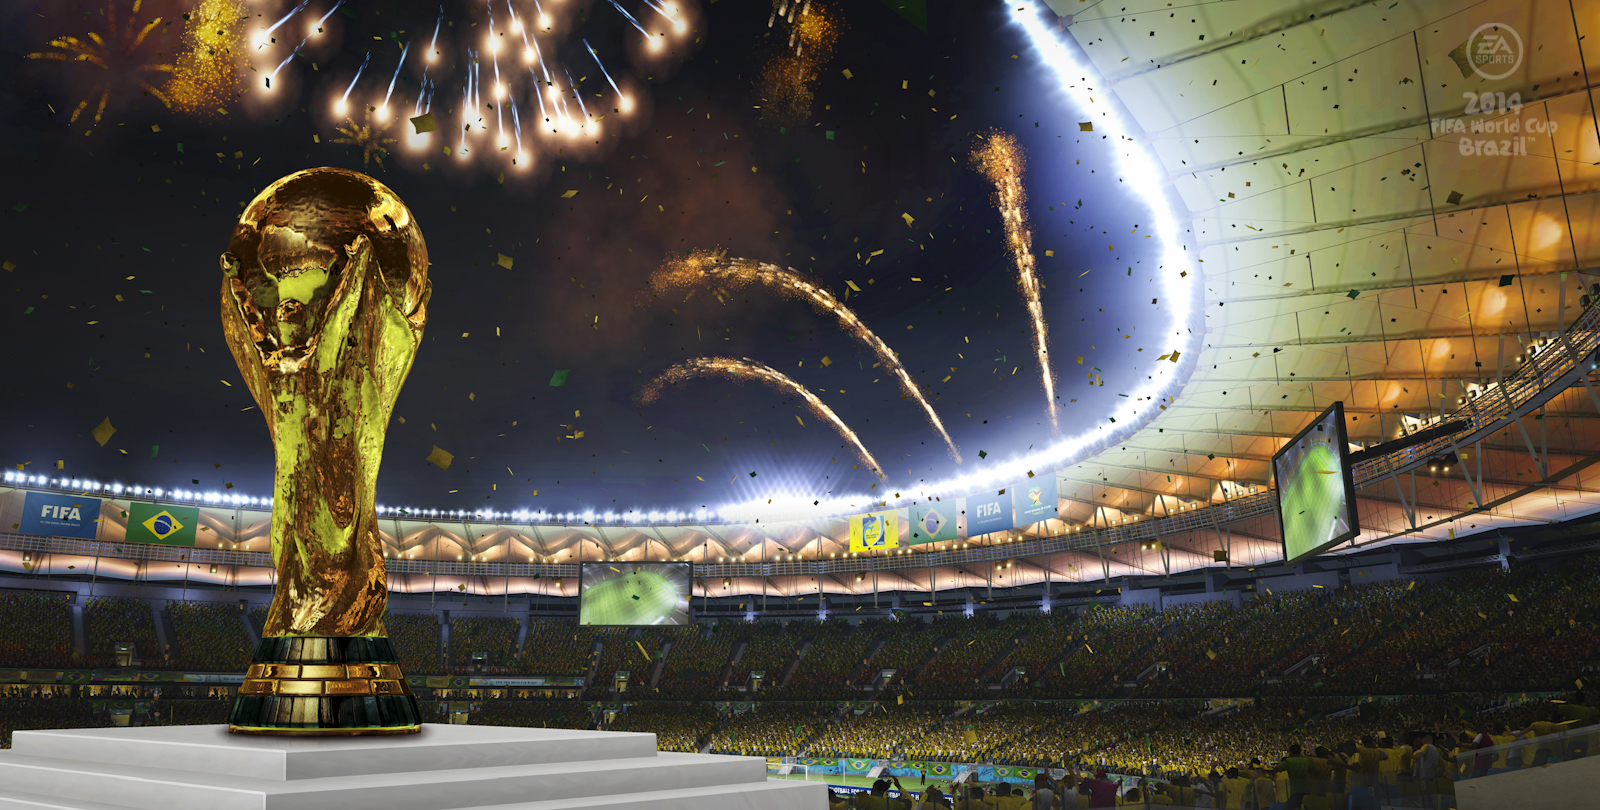 Concorso-Mania: tutti i concorsi dei Mondiali 2014